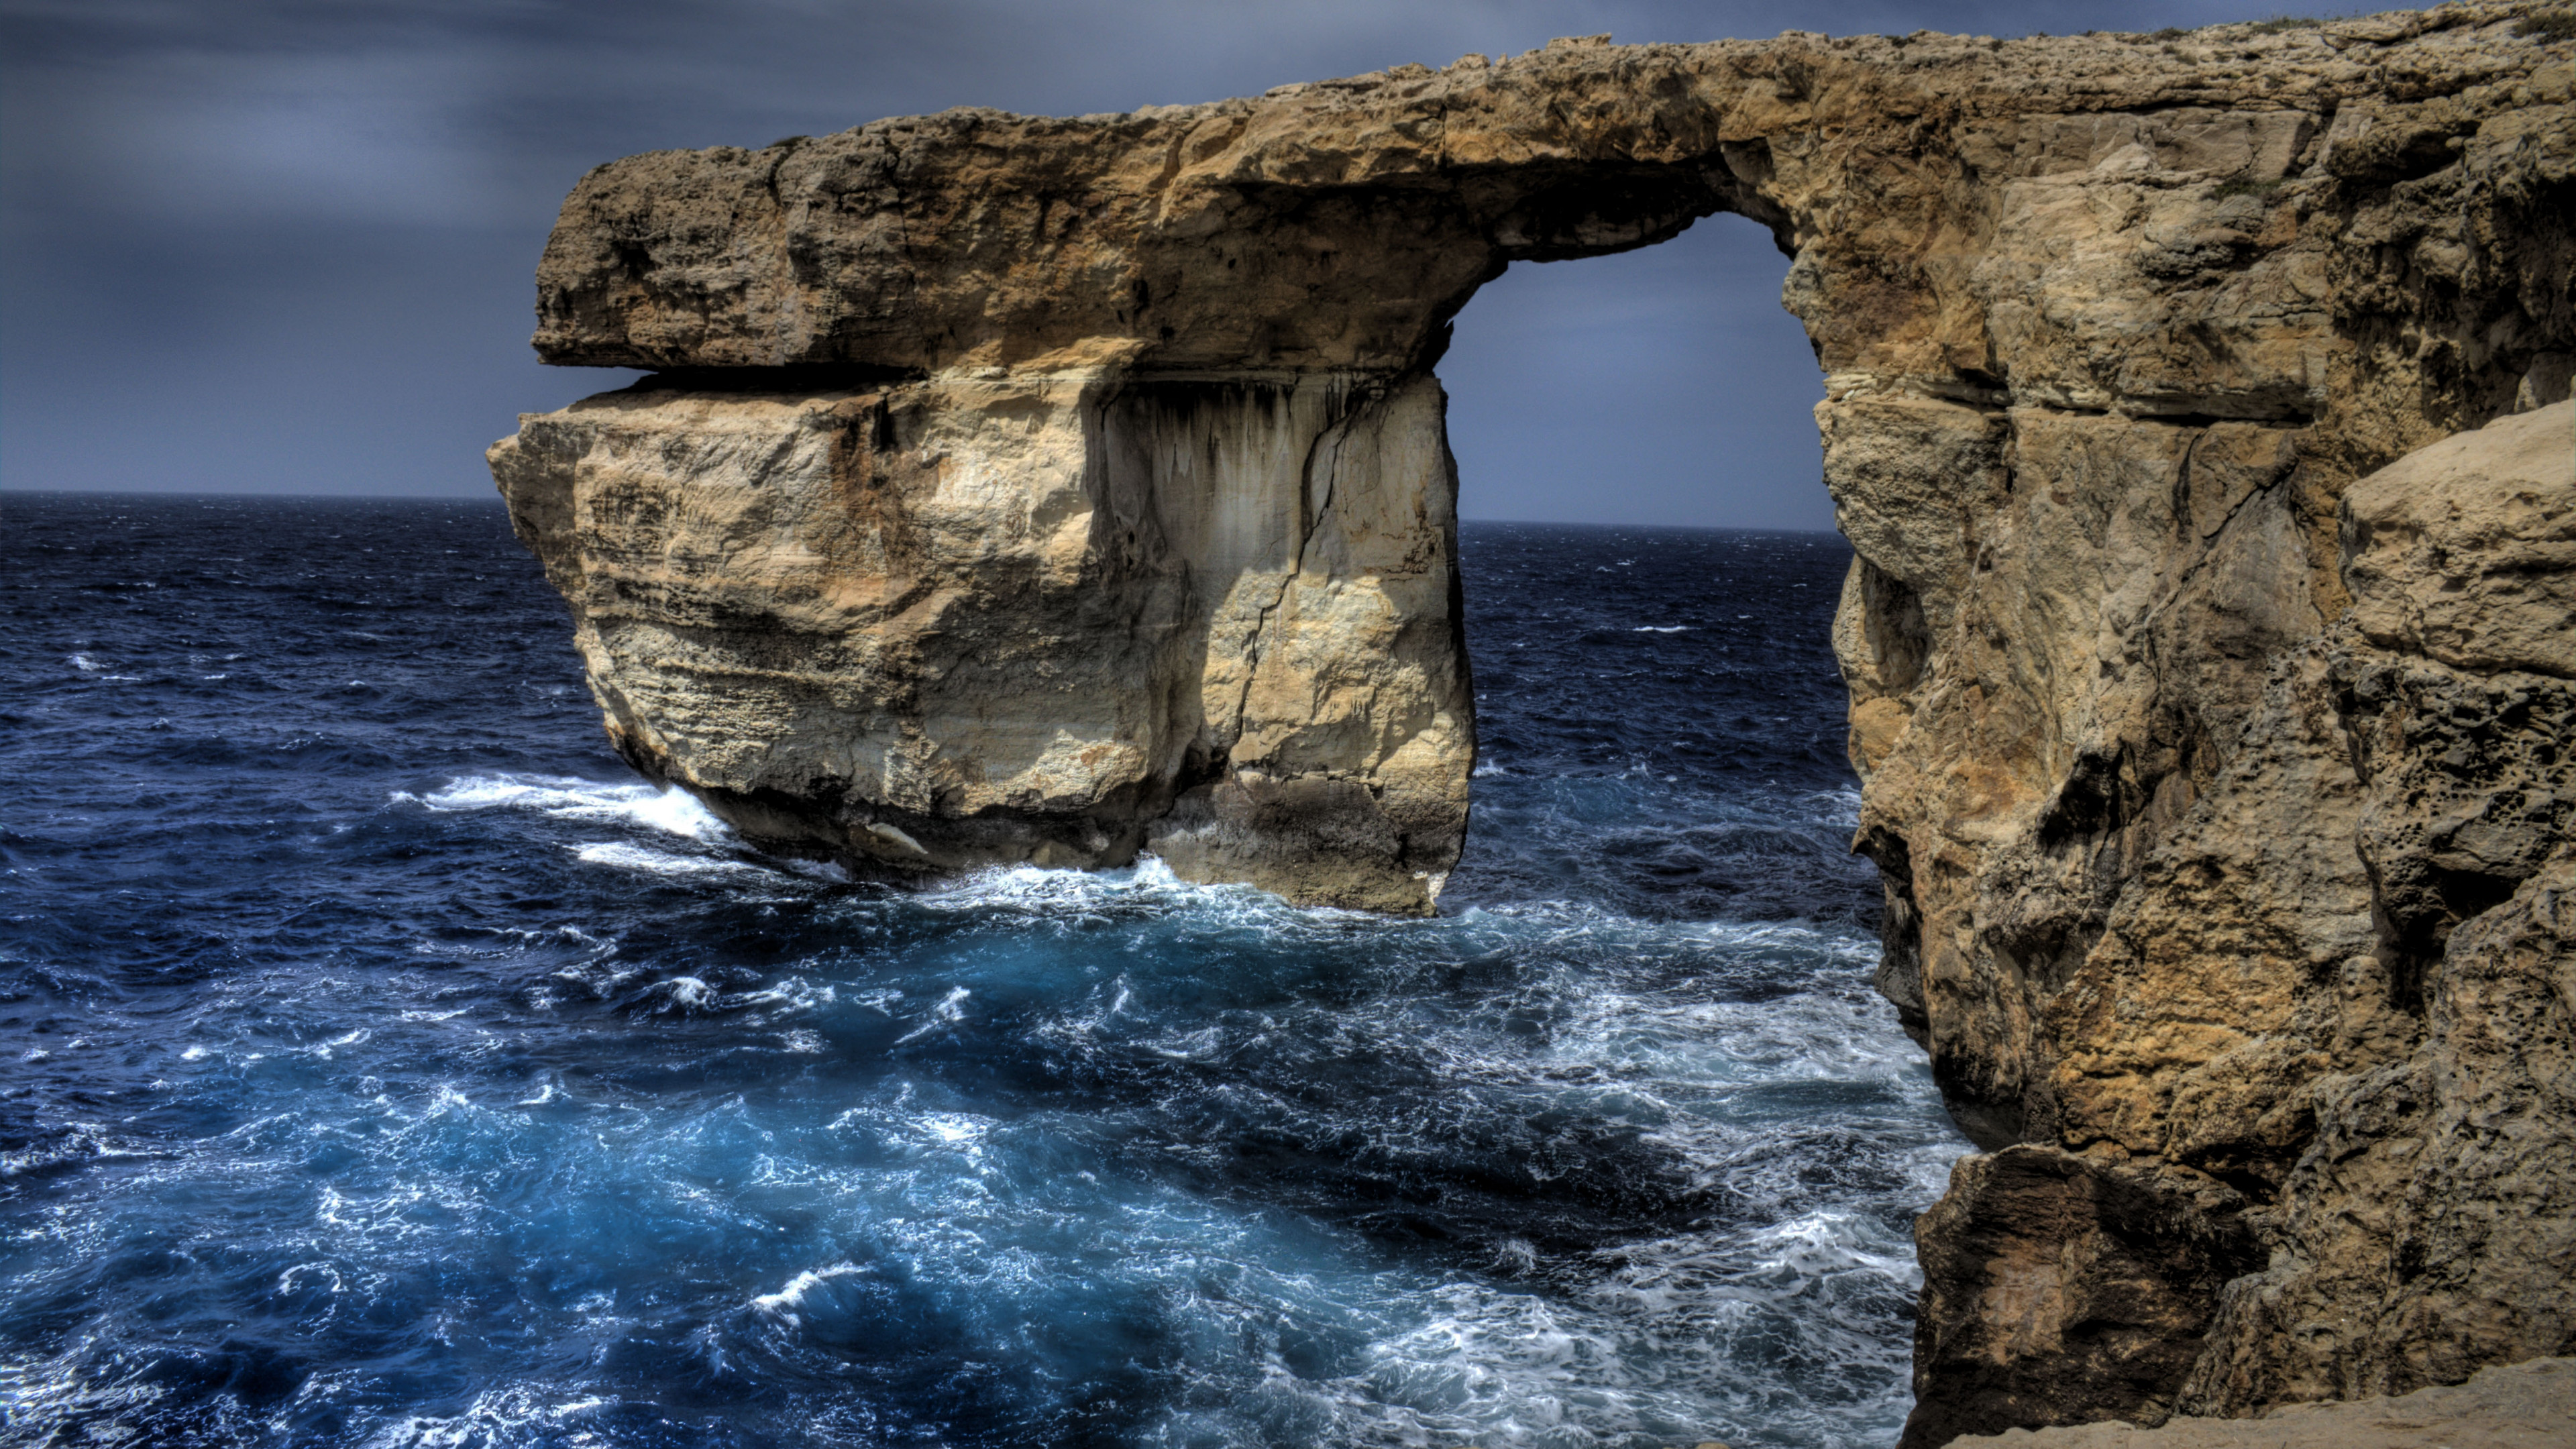 Fondos de pantalla Azure Window in Malta